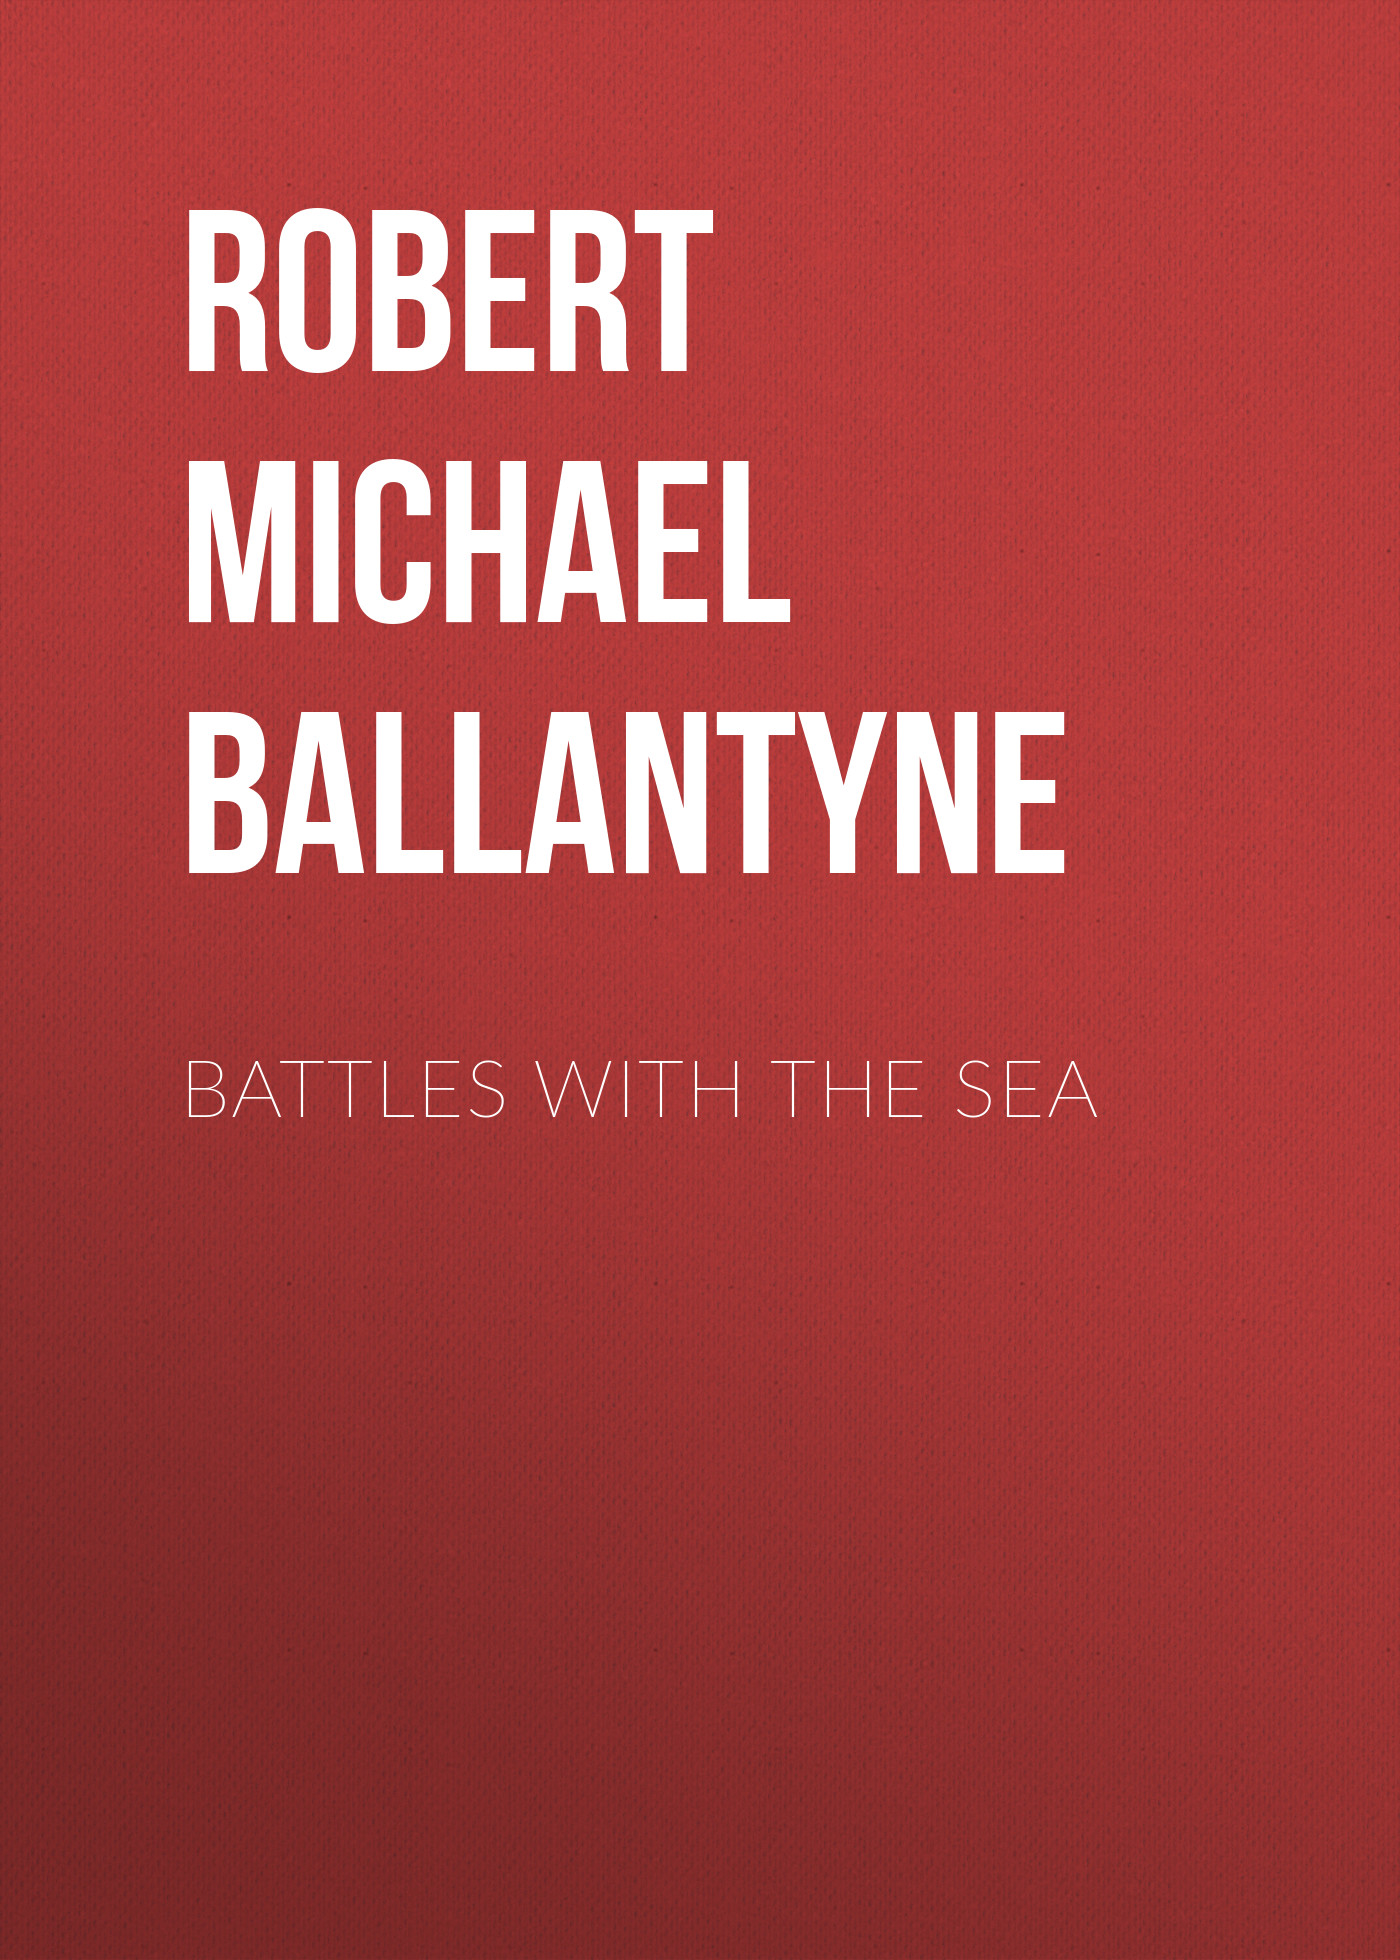 Книга Battles with the Sea из серии , созданная Robert Michael Ballantyne, может относится к жанру Зарубежная классика, Техническая литература, Зарубежная старинная литература. Стоимость электронной книги Battles with the Sea с идентификатором 36094653 составляет 0 руб.